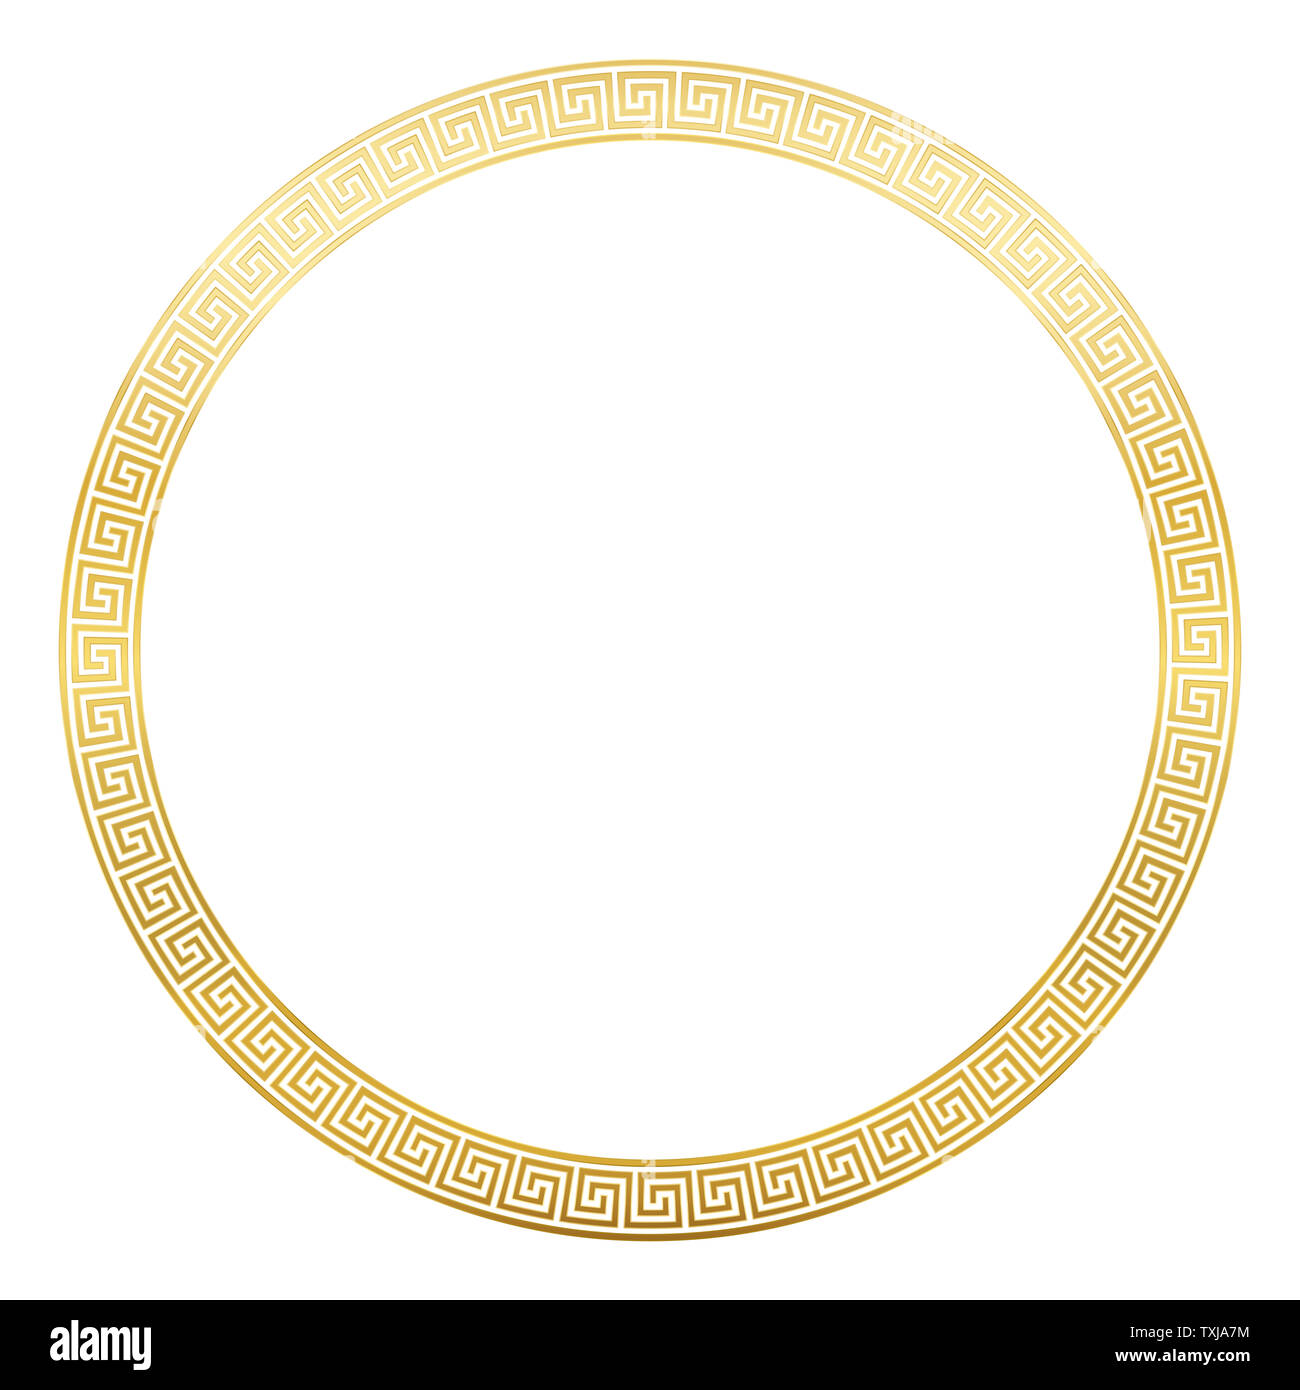 Alte Muster frame, runde Golden meander Design mit nahtloser griechischen Muster, dekorative Grenze, von der kontinuierlichen Linien gebaut. Stockfoto